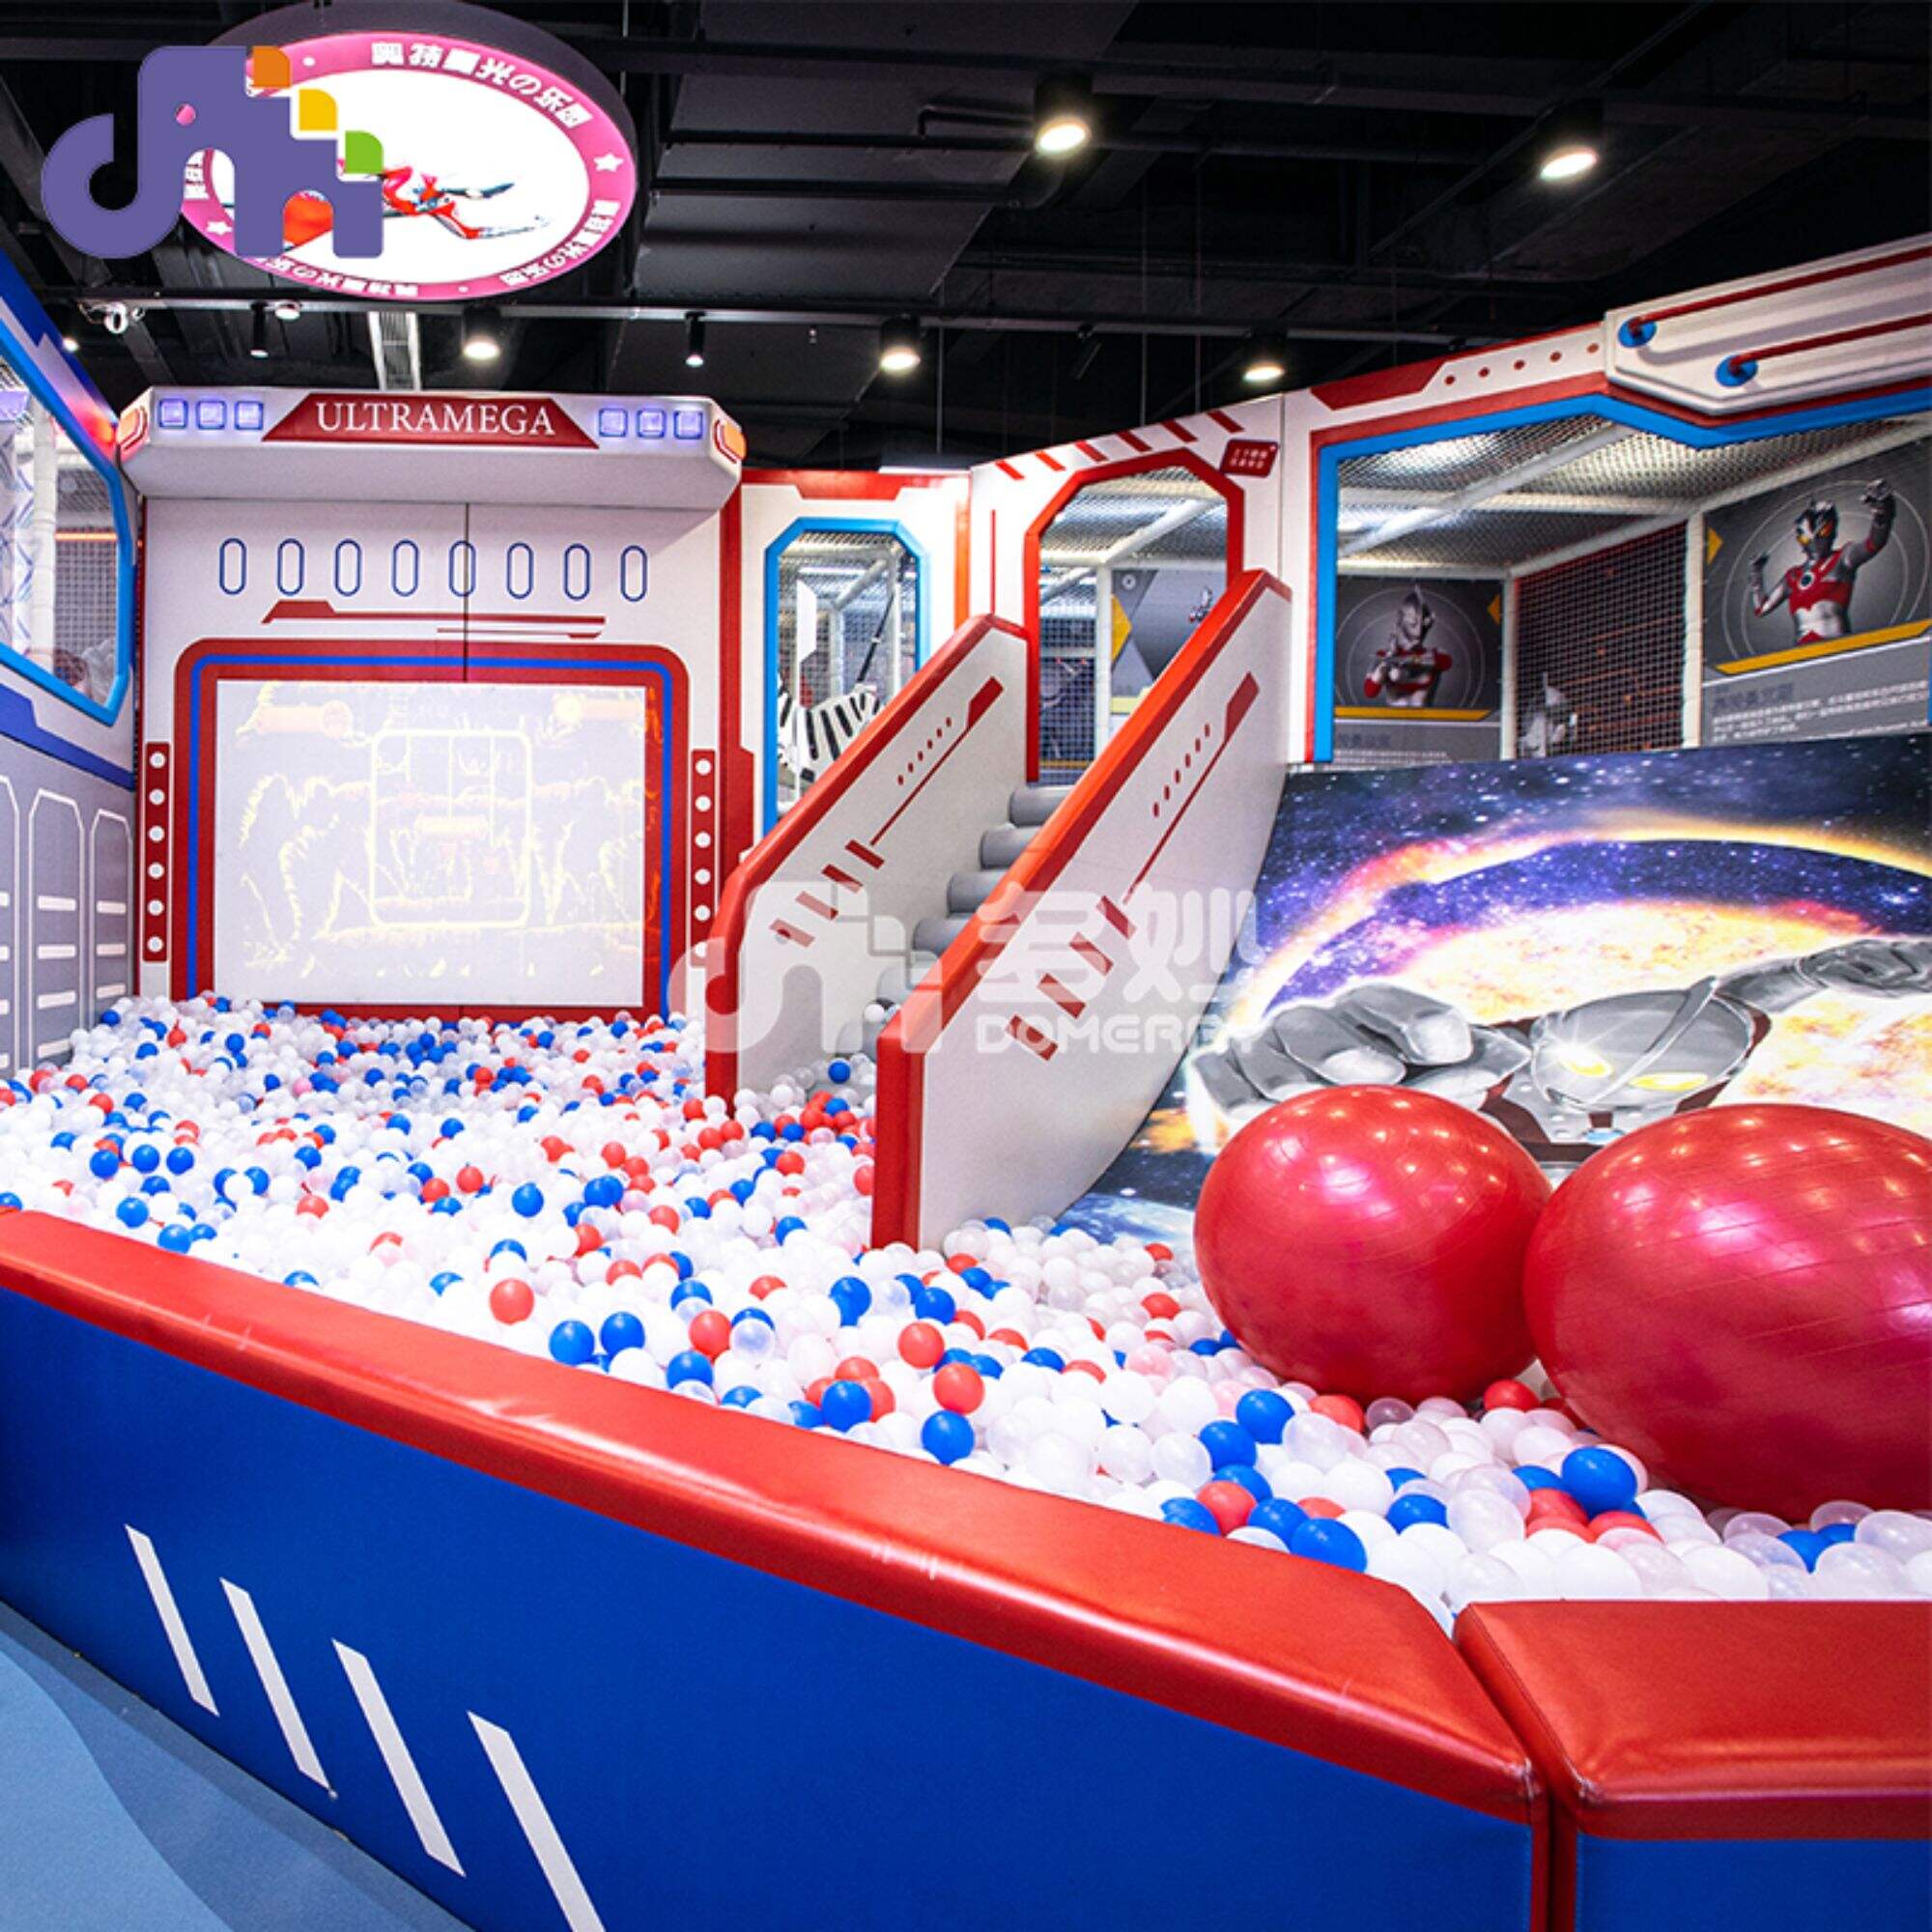 Parque Temático Ultraman, diseño de personalización IP, equipo de juego suave, tiovivo eléctrico, parque infantil interior